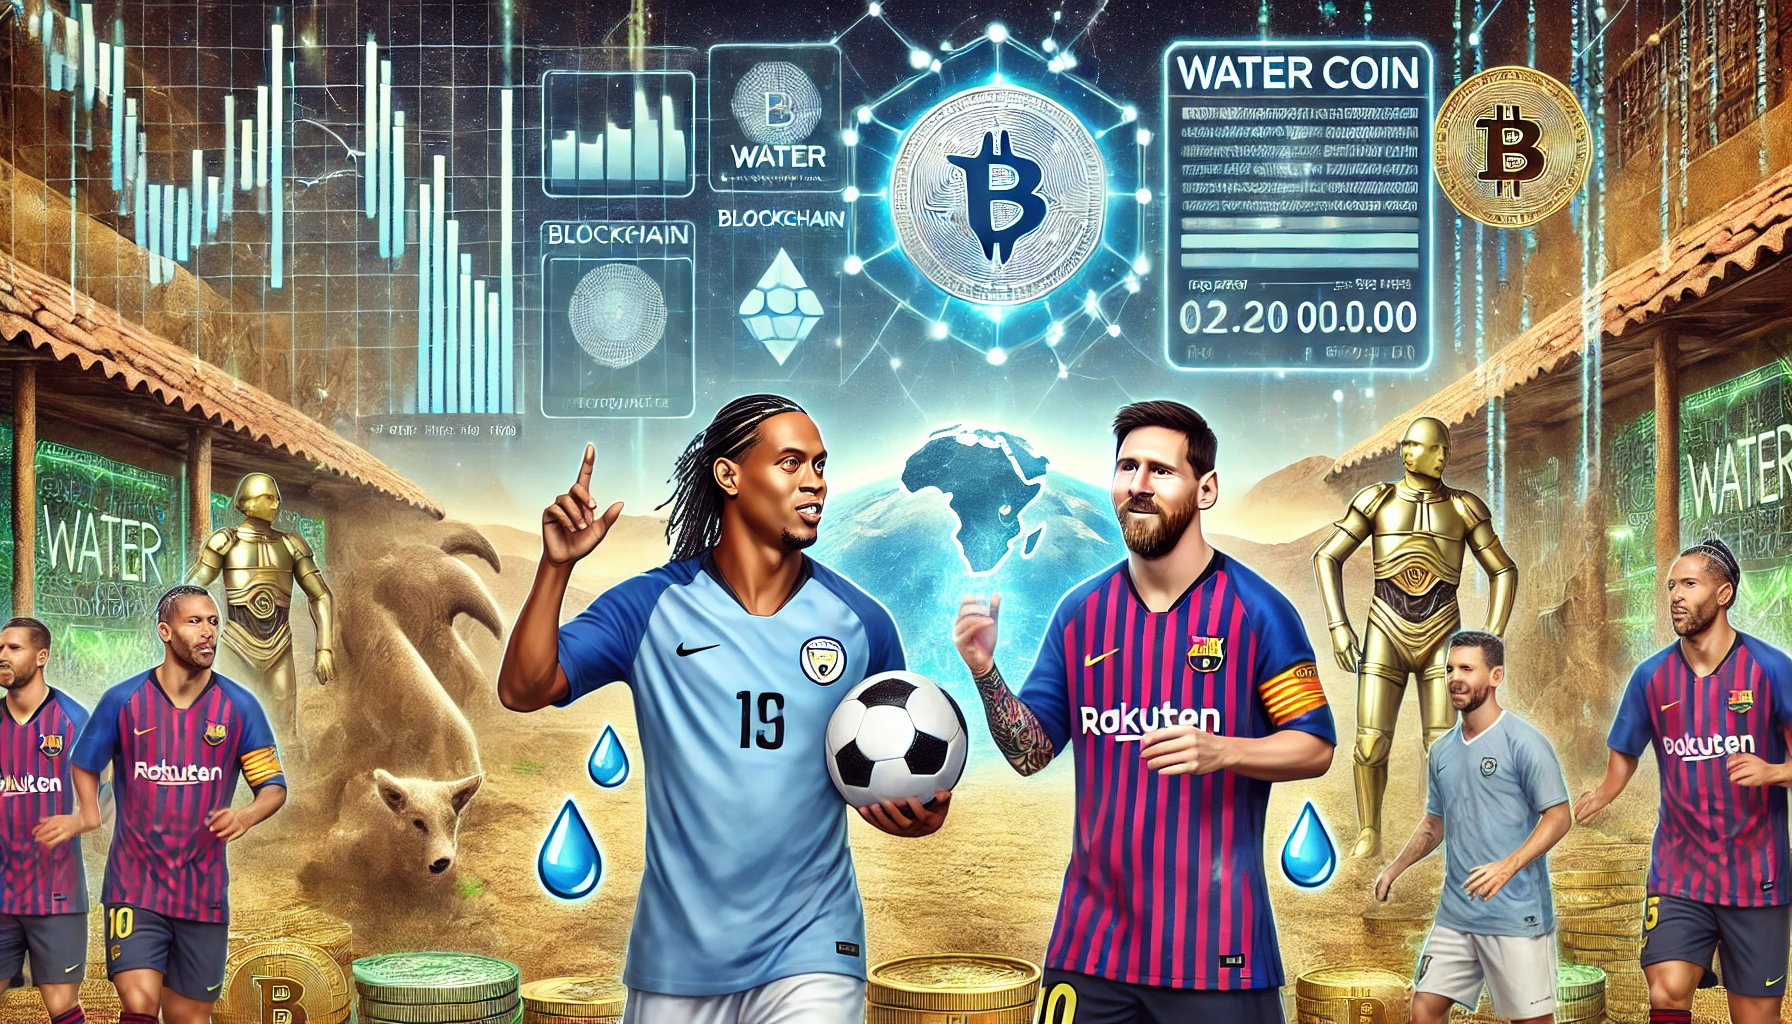 Fußballlegenden Ronaldinho und Messi unterstützen die meme-münze Water